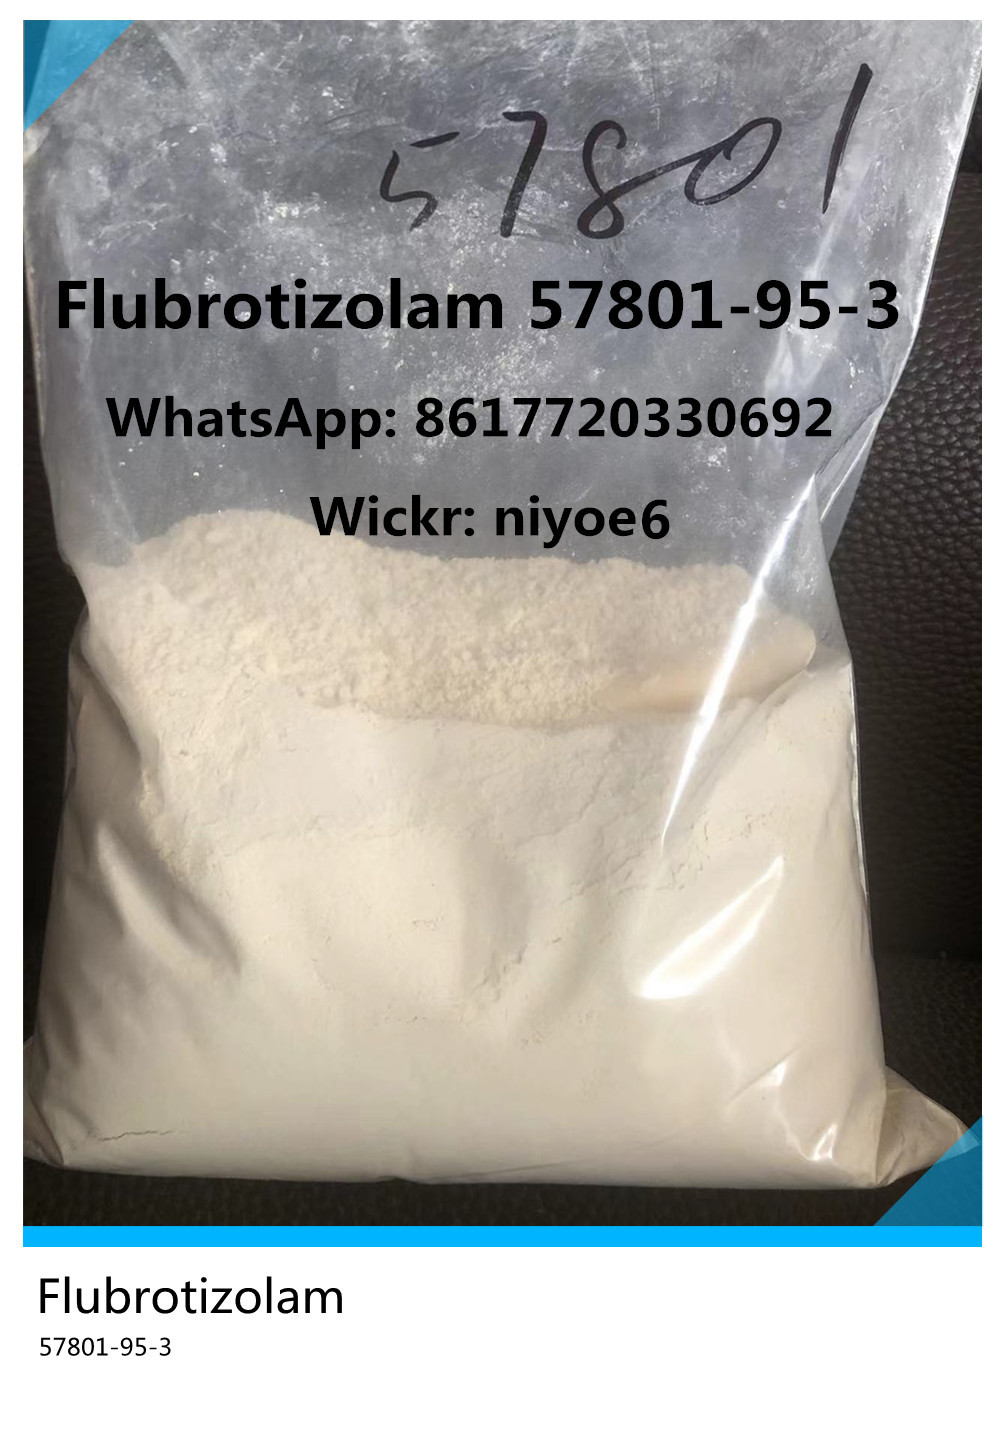 Benzodiazepine Powder 99.5% Flubrotizolam Manufacturer CAS 57801-95-3 for Calm Wickr: niyoe6